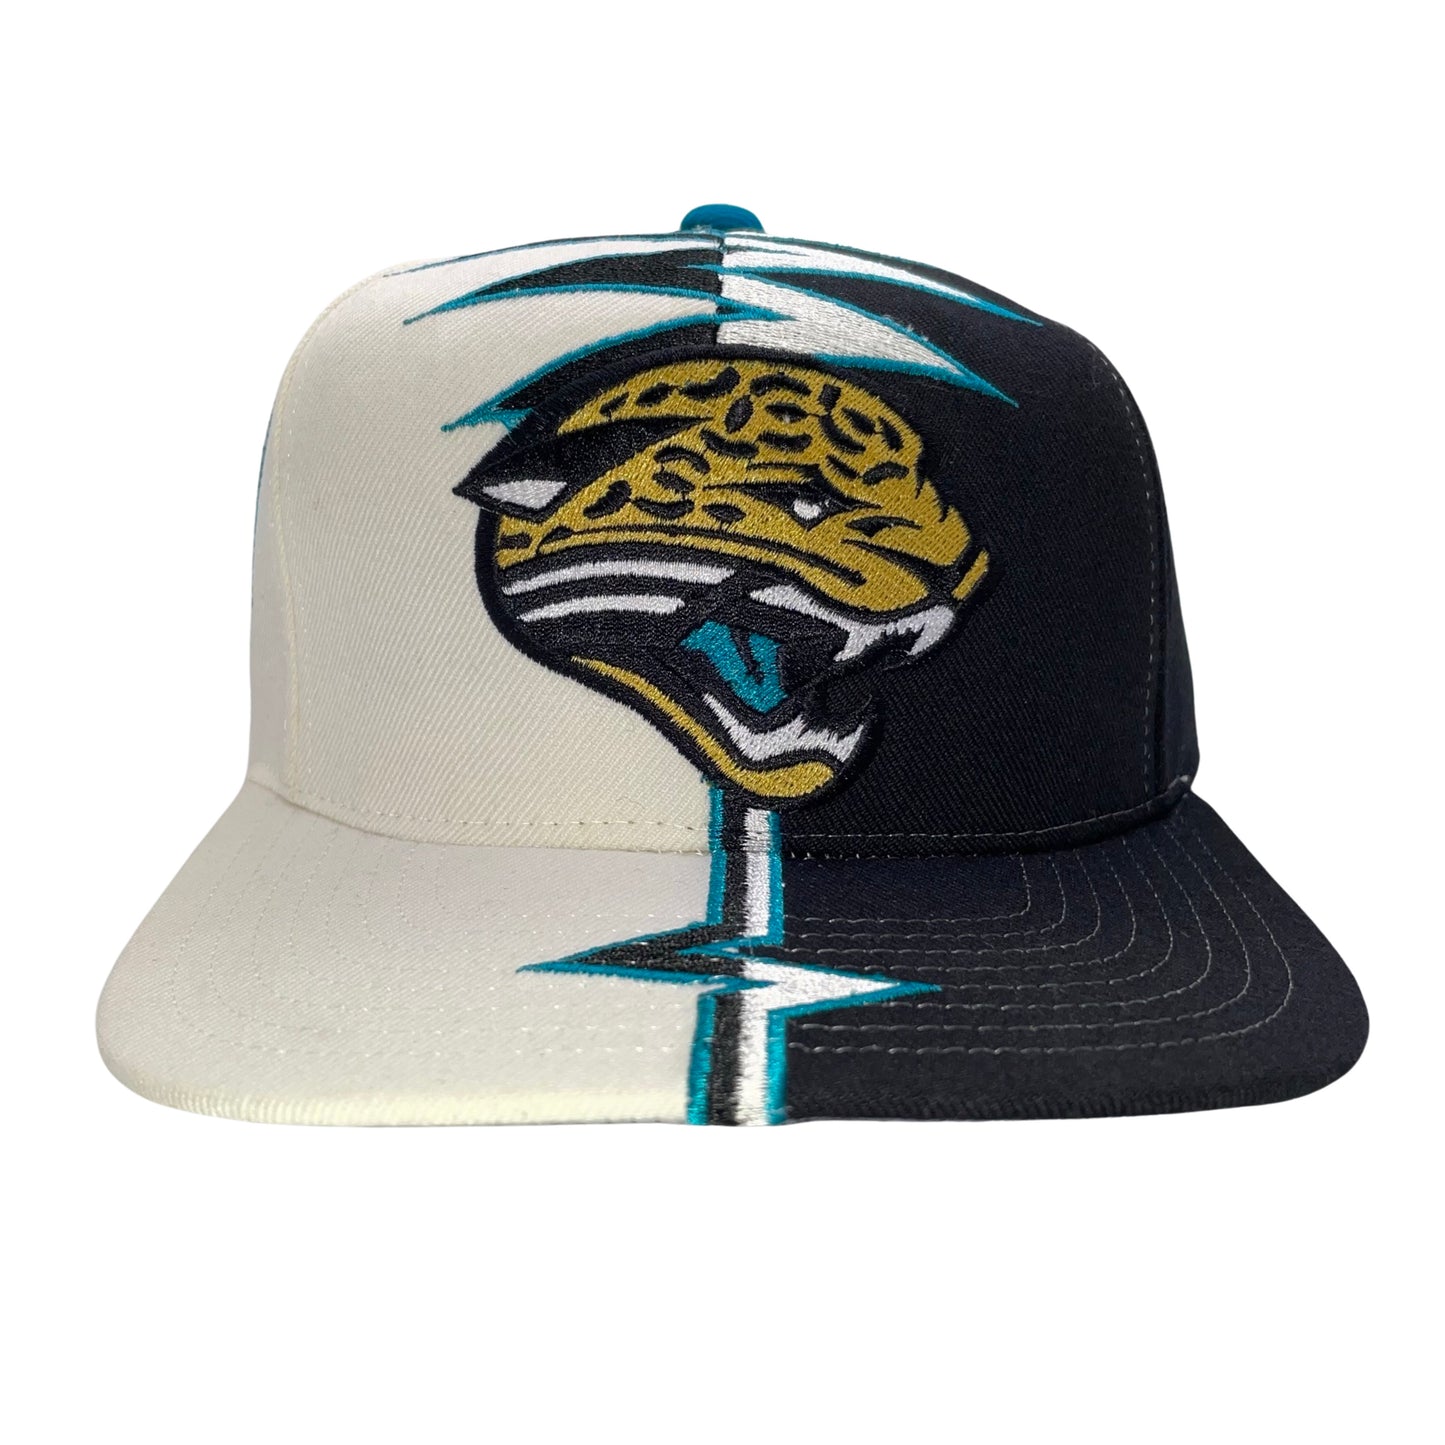 Vintage Jacksonville Jaguars STARTER "Shockwave" hat